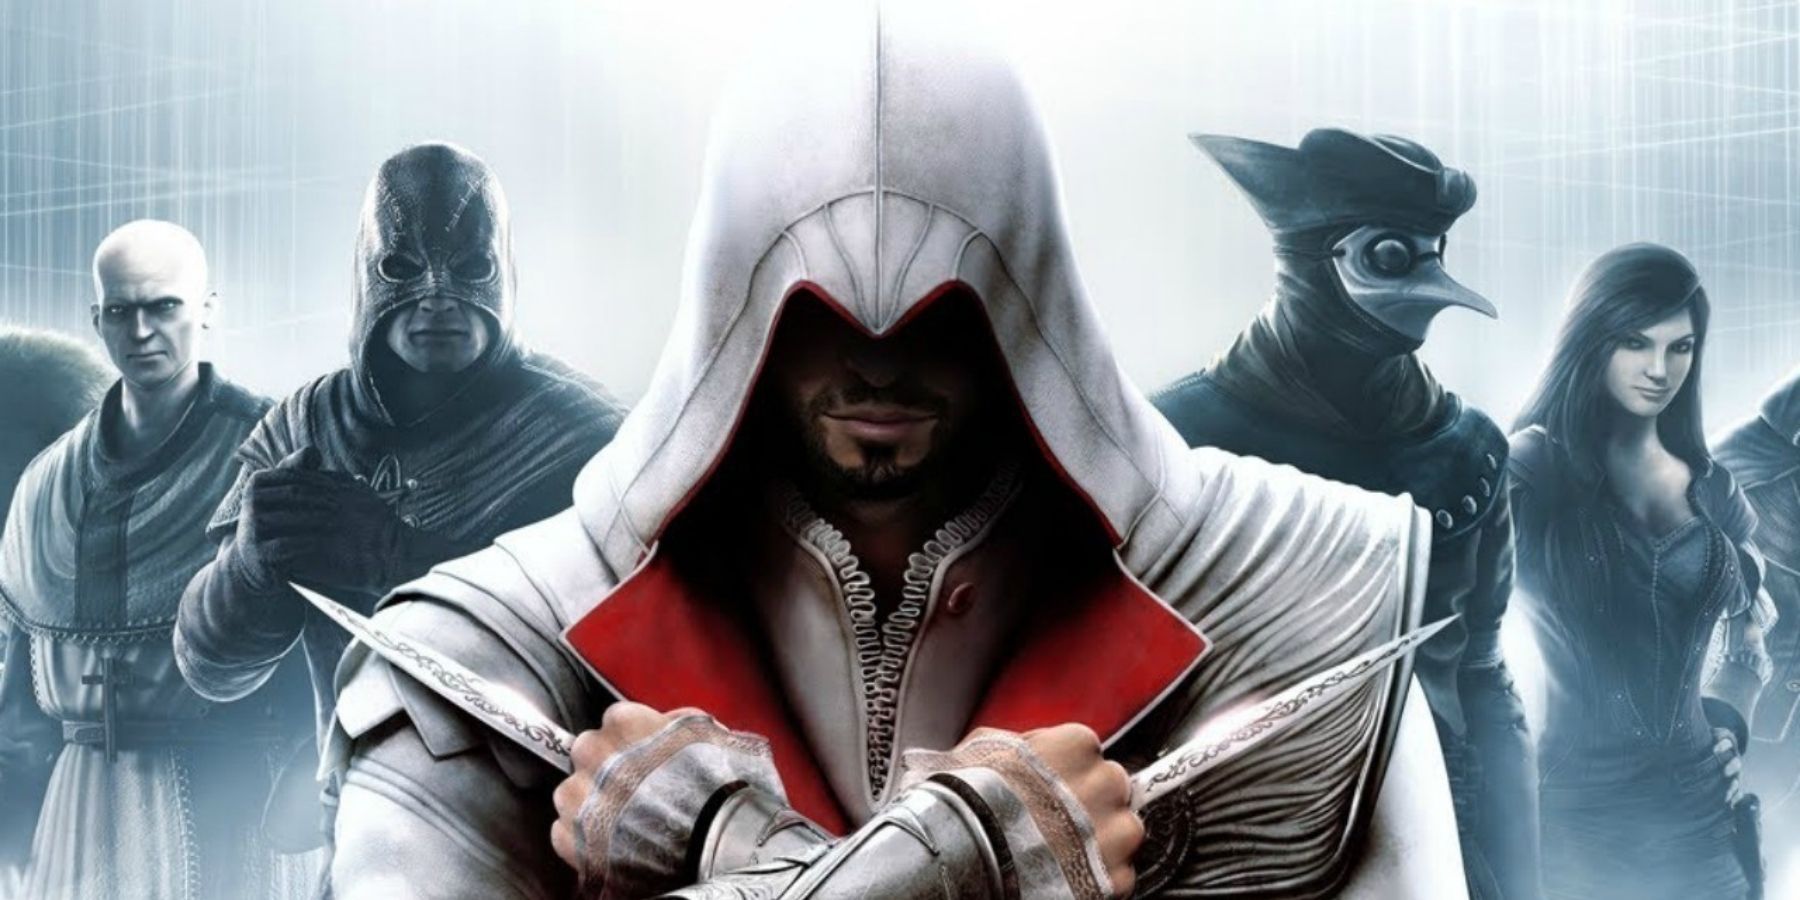 Assassin's Creed Ezio hidden blades weapons